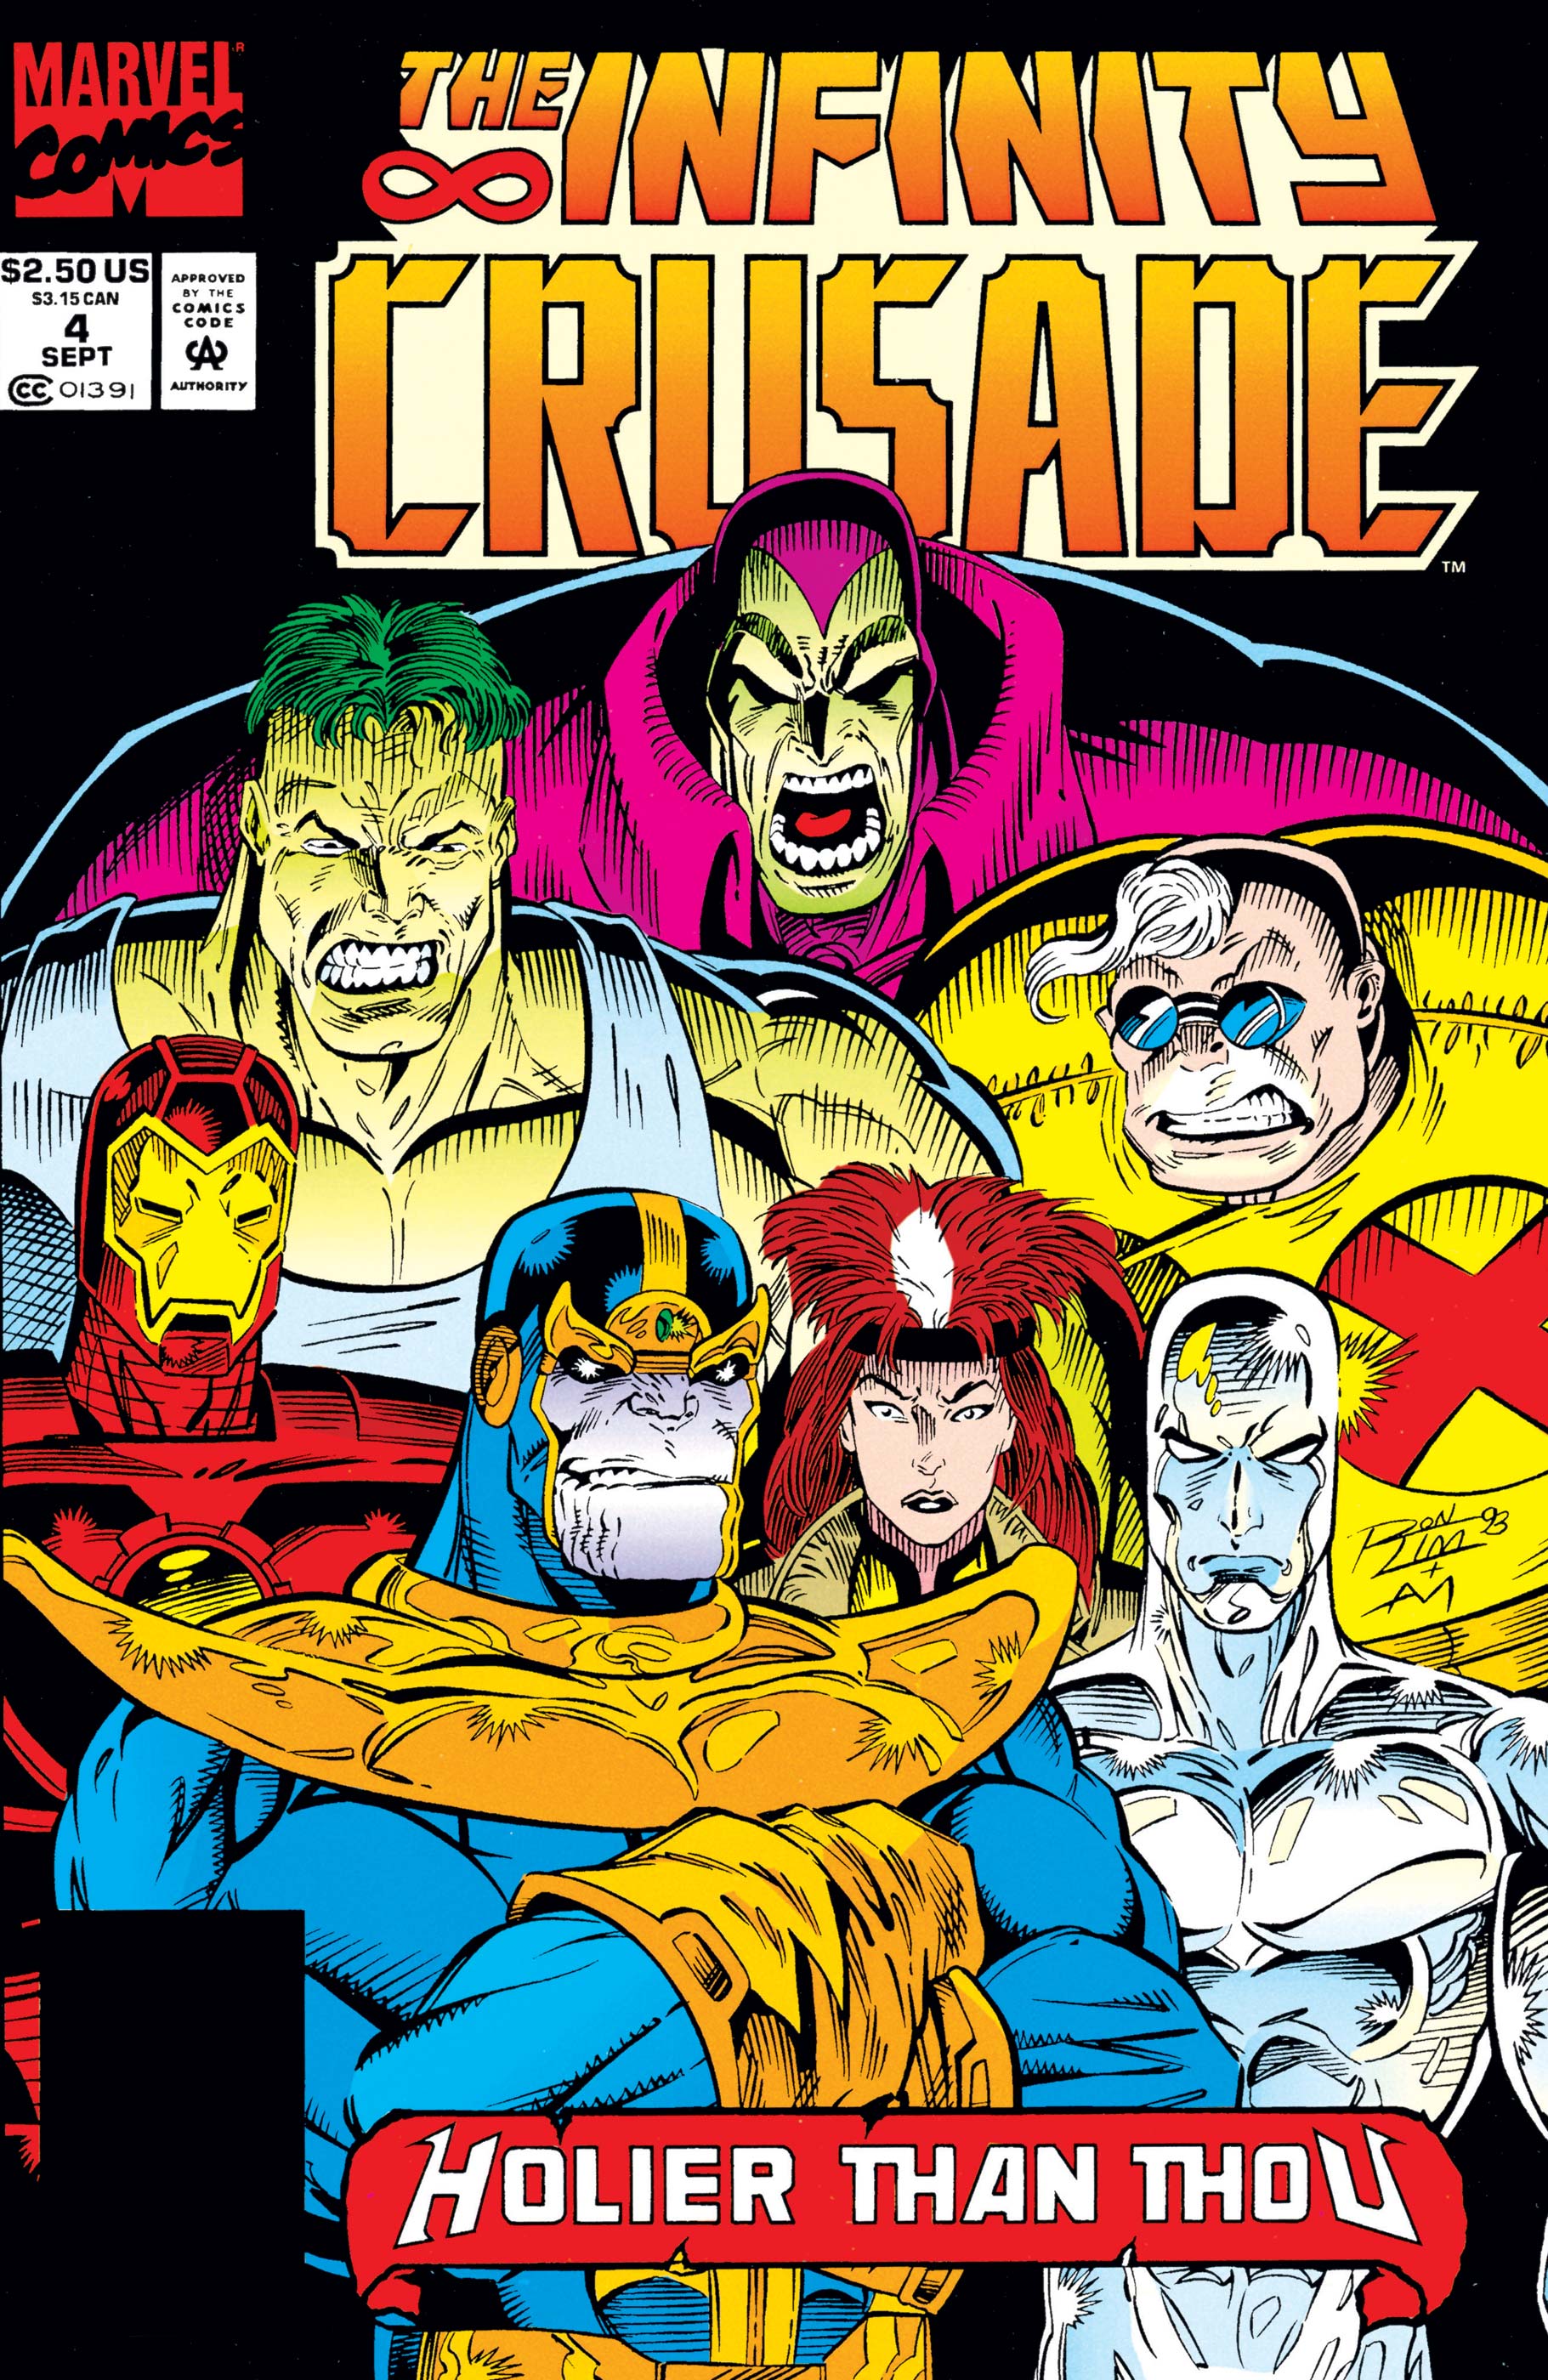 Infinity Crusade (1993) #4